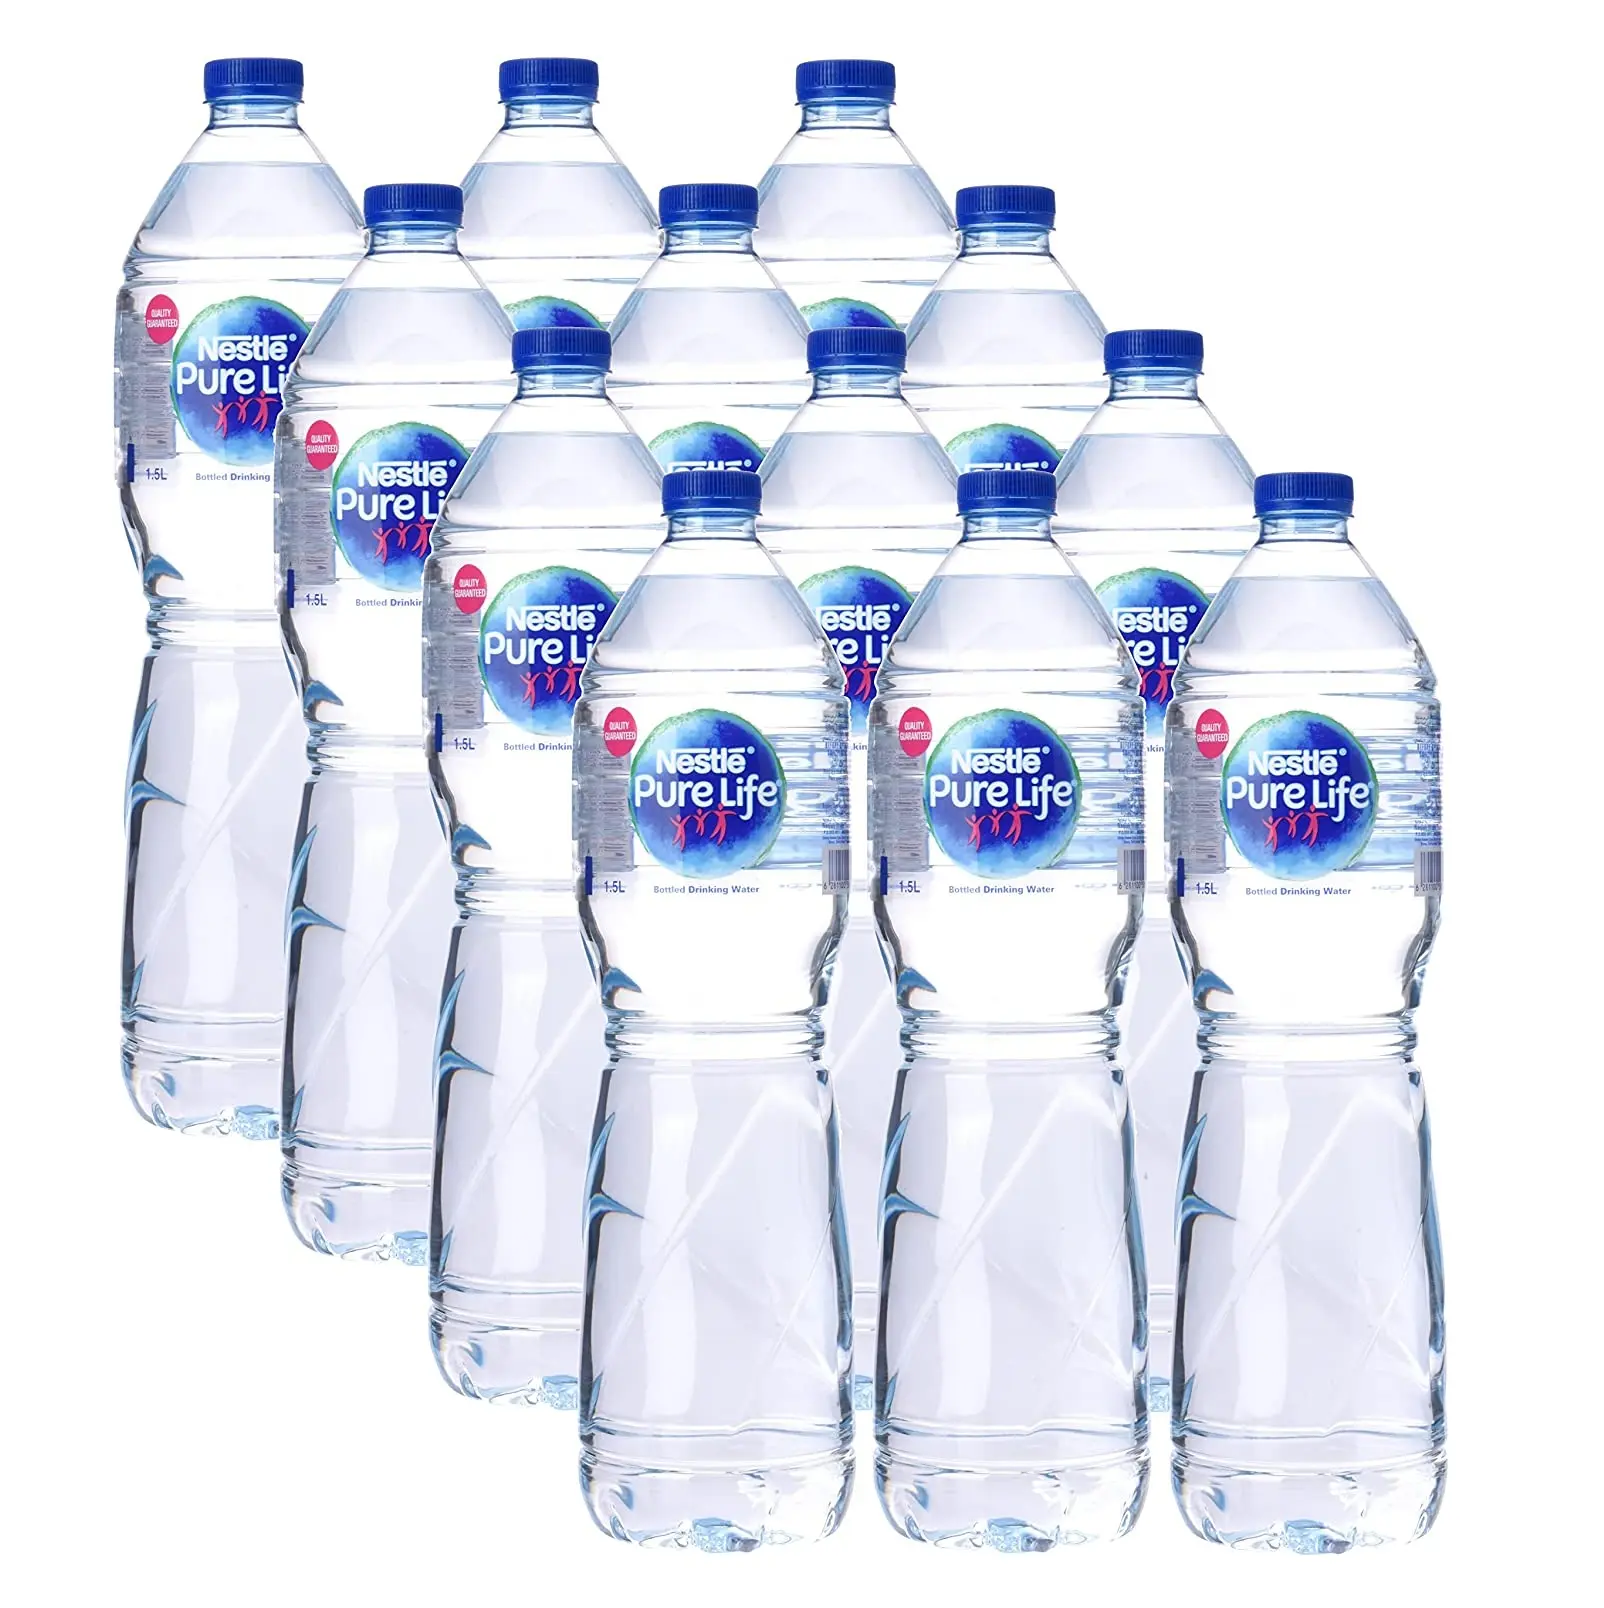 زجاجة حياة نقية أصلية معبأة في زجاجات مياه الشرب-12 x Ltr بسعر الجملة الرخيص